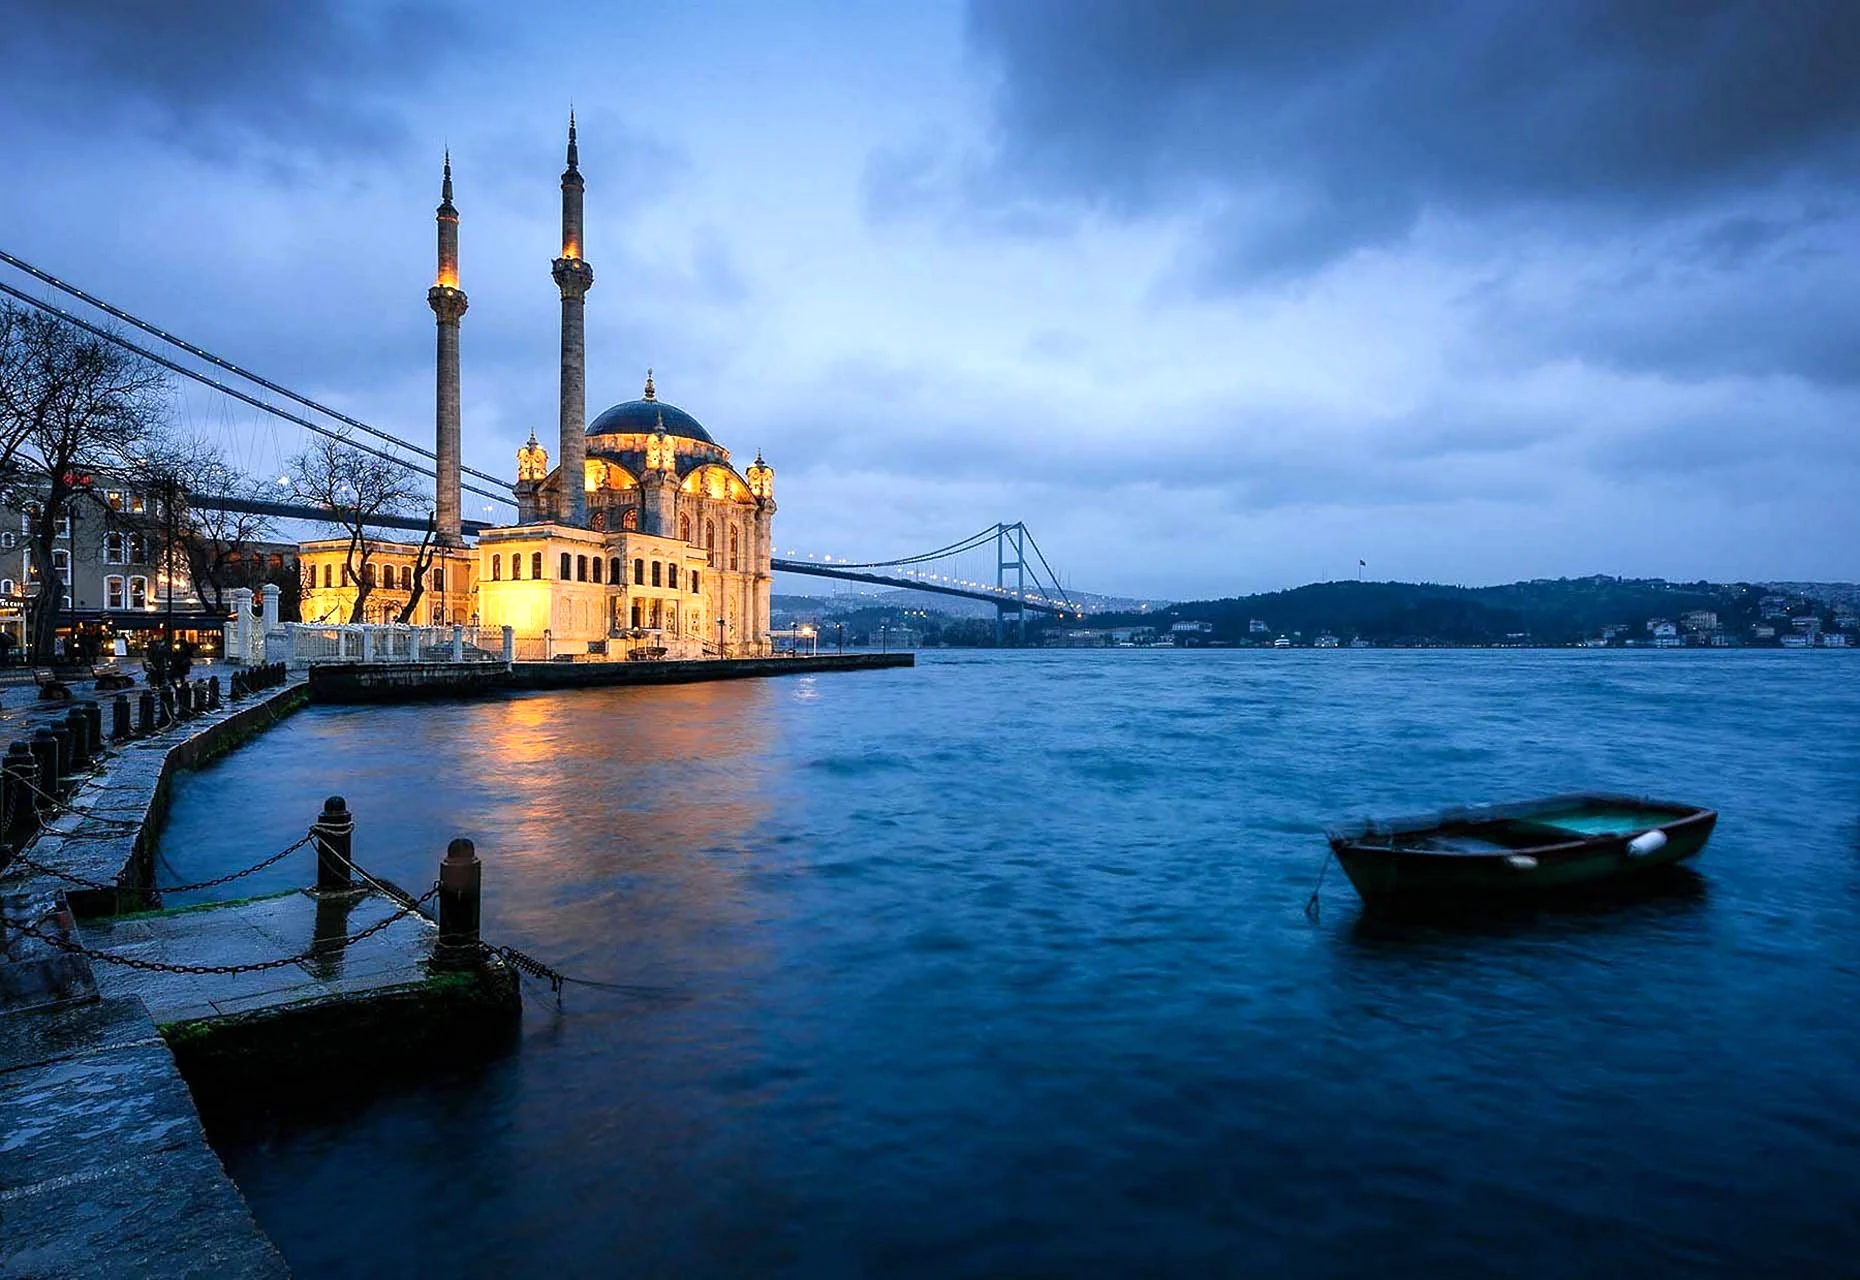 Турция мечеть ортакёй